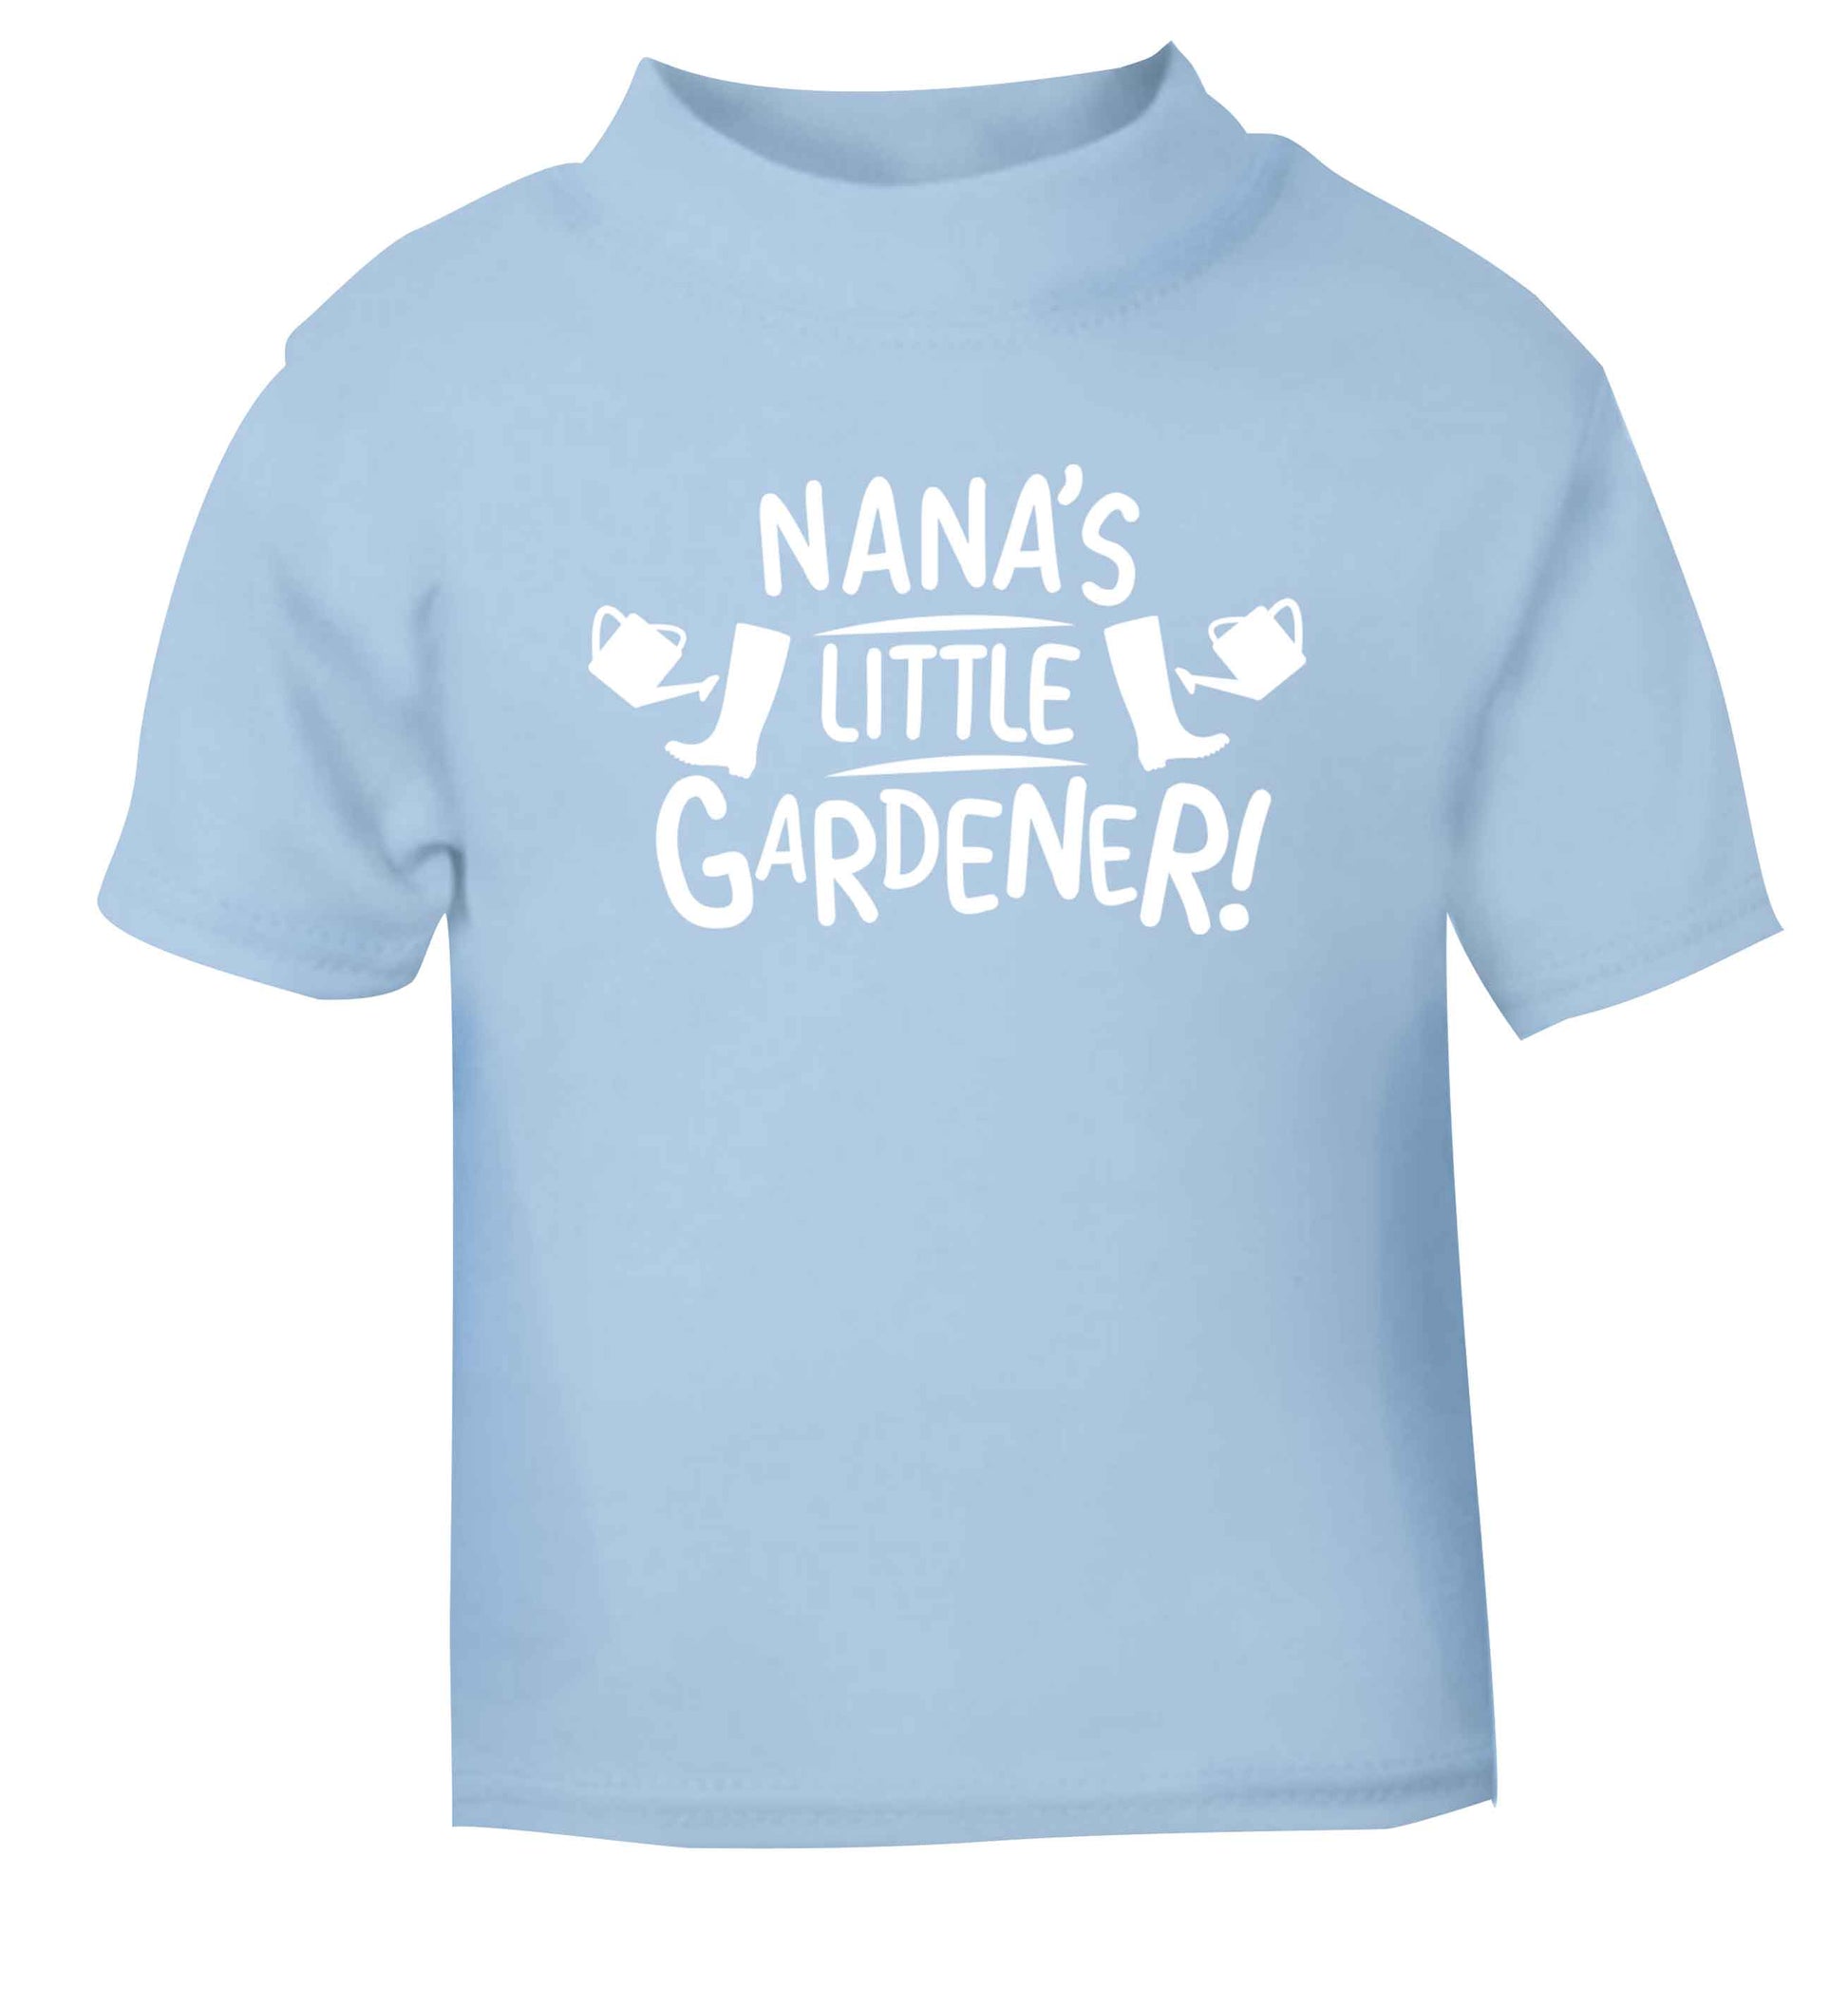 Nana's little gardener light blue Baby Toddler Tshirt 2 Years